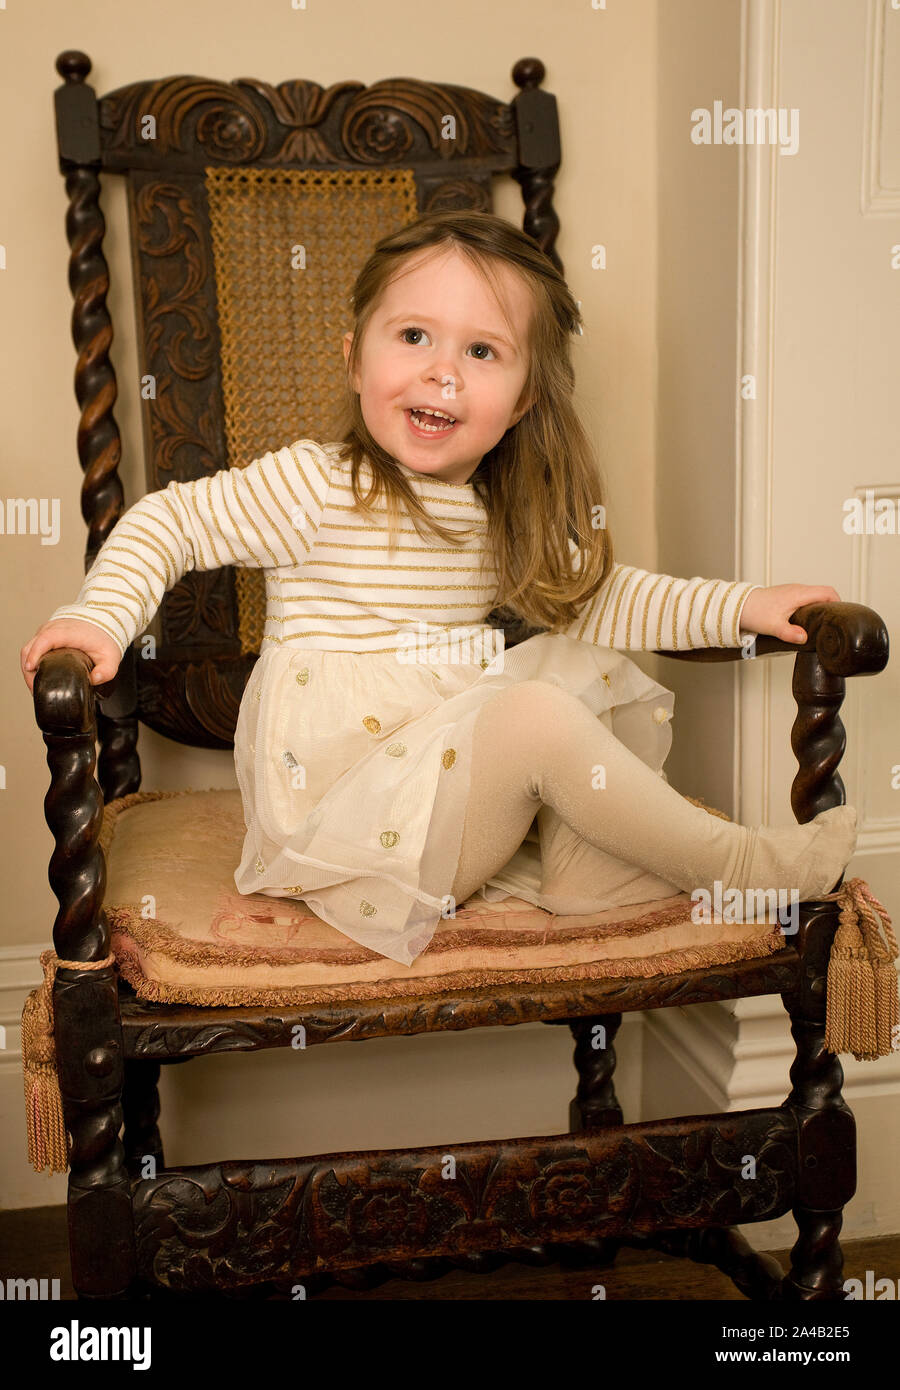 Weibliche Kleinkind saß auf Stuhl ihre Partei Kleid tragen Stockfoto